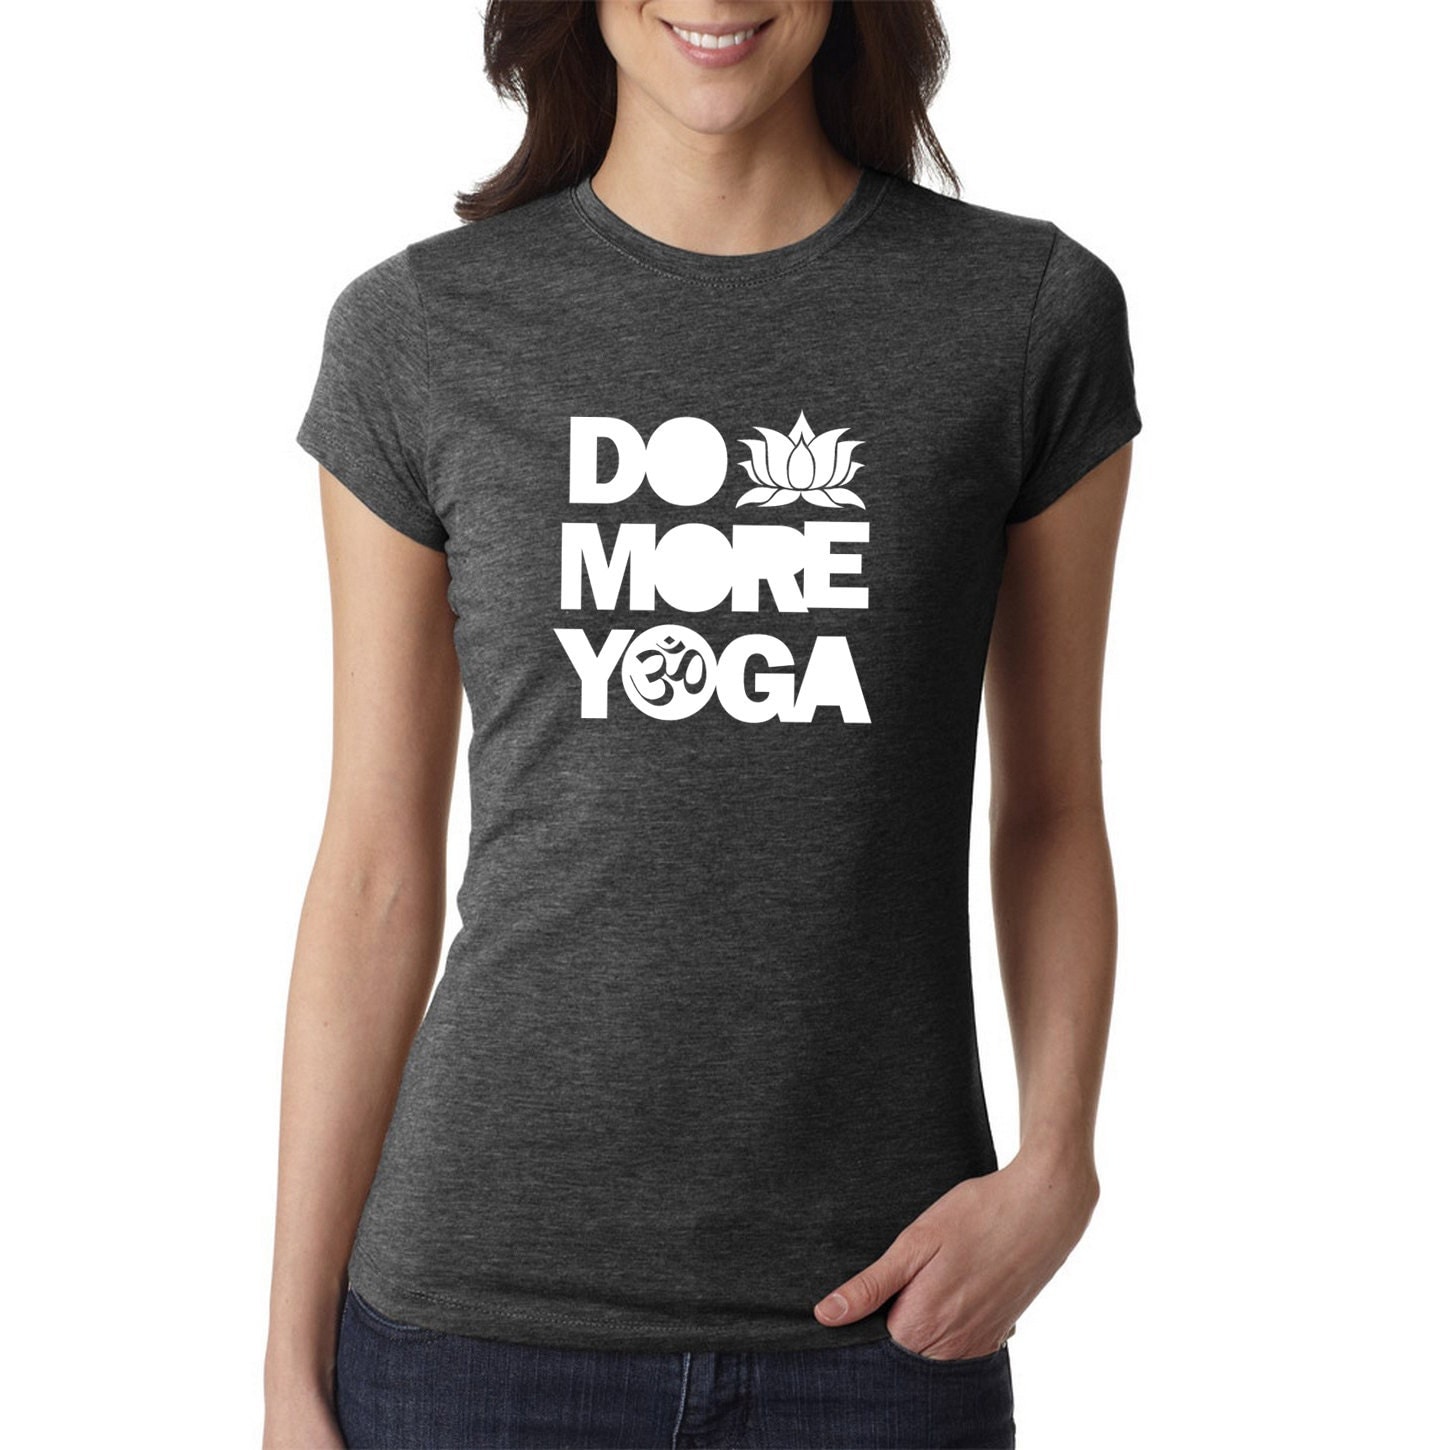 Yoga shirt yoga tshirt do more yoga yoga t-shirt yoga top